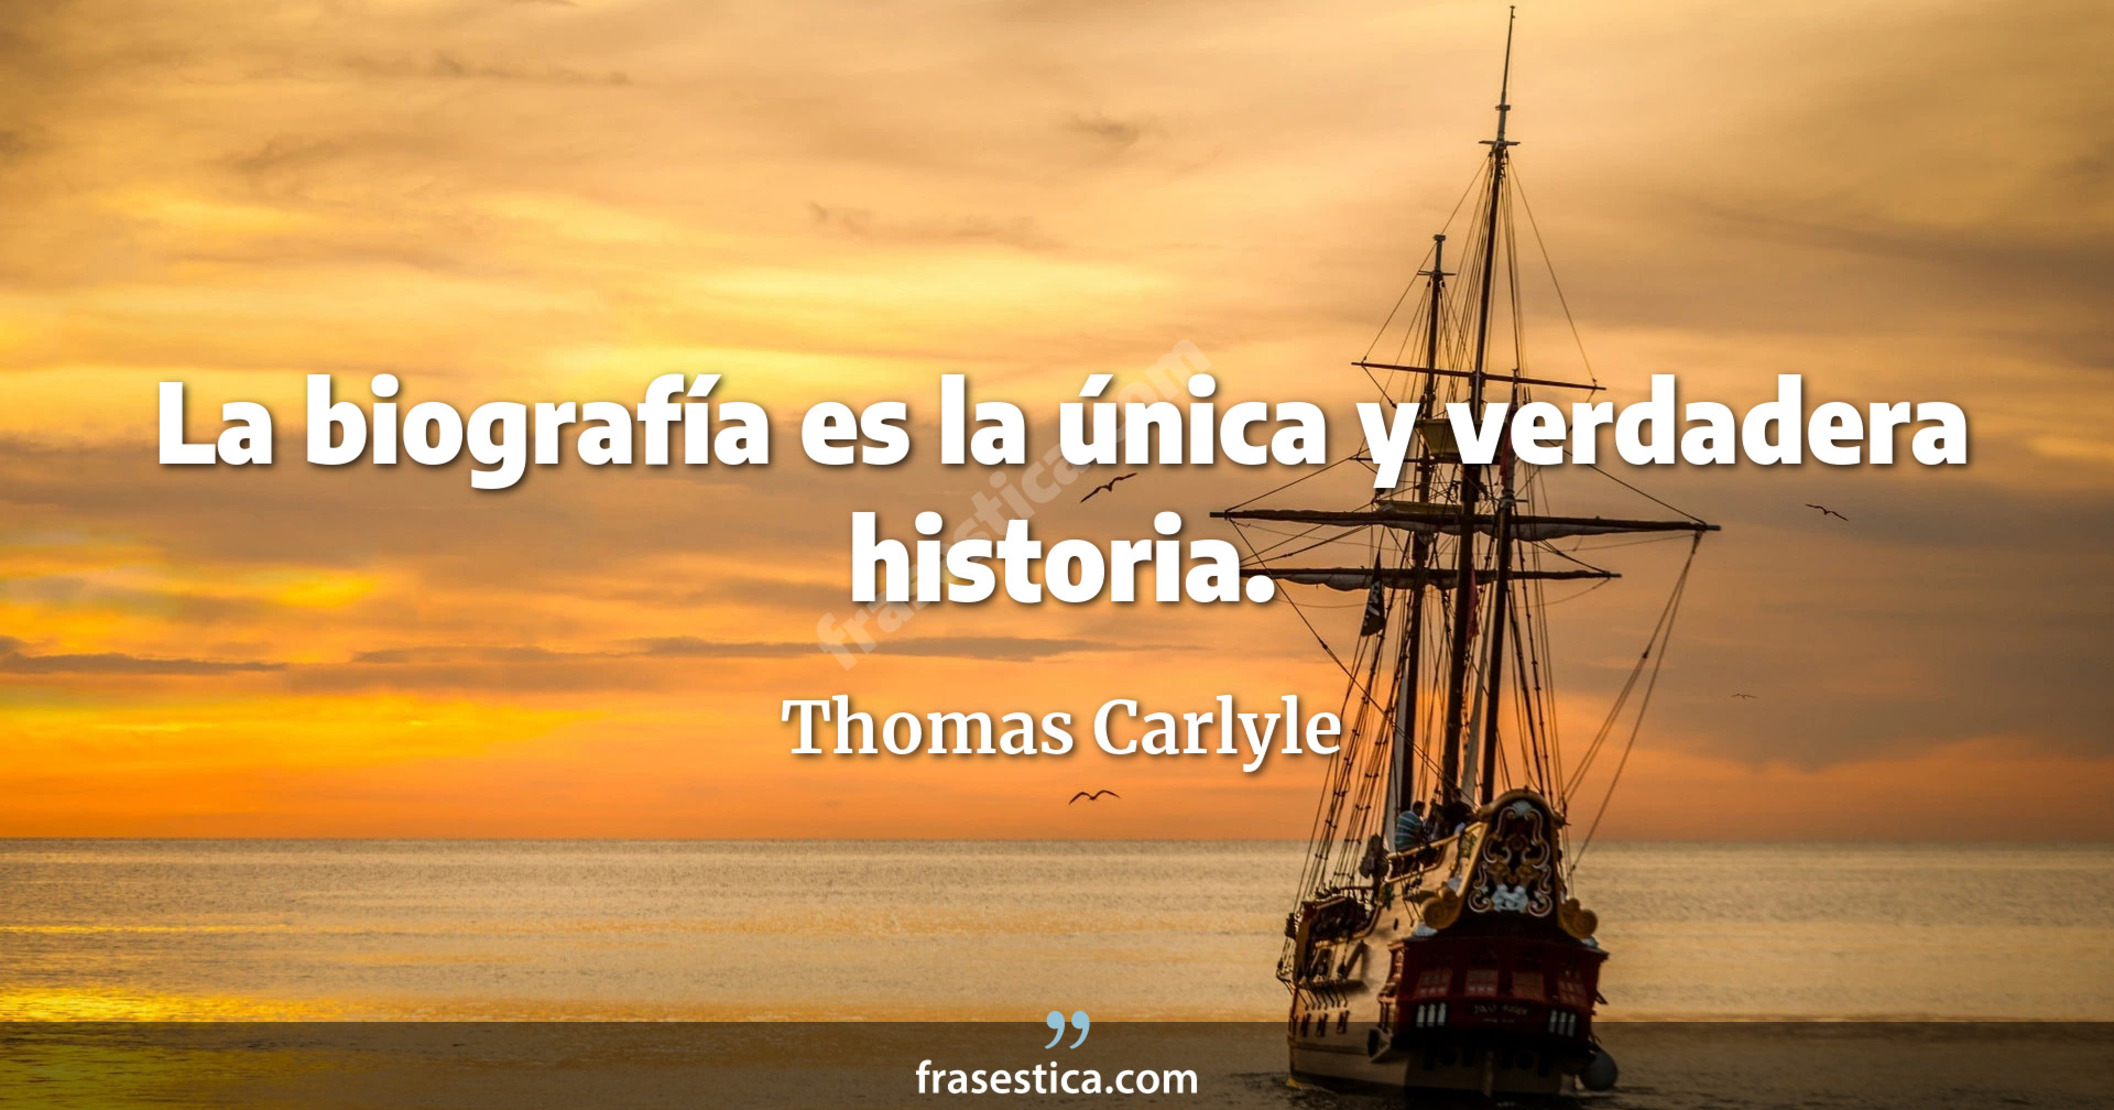 La biografía es la única y verdadera historia. - Thomas Carlyle